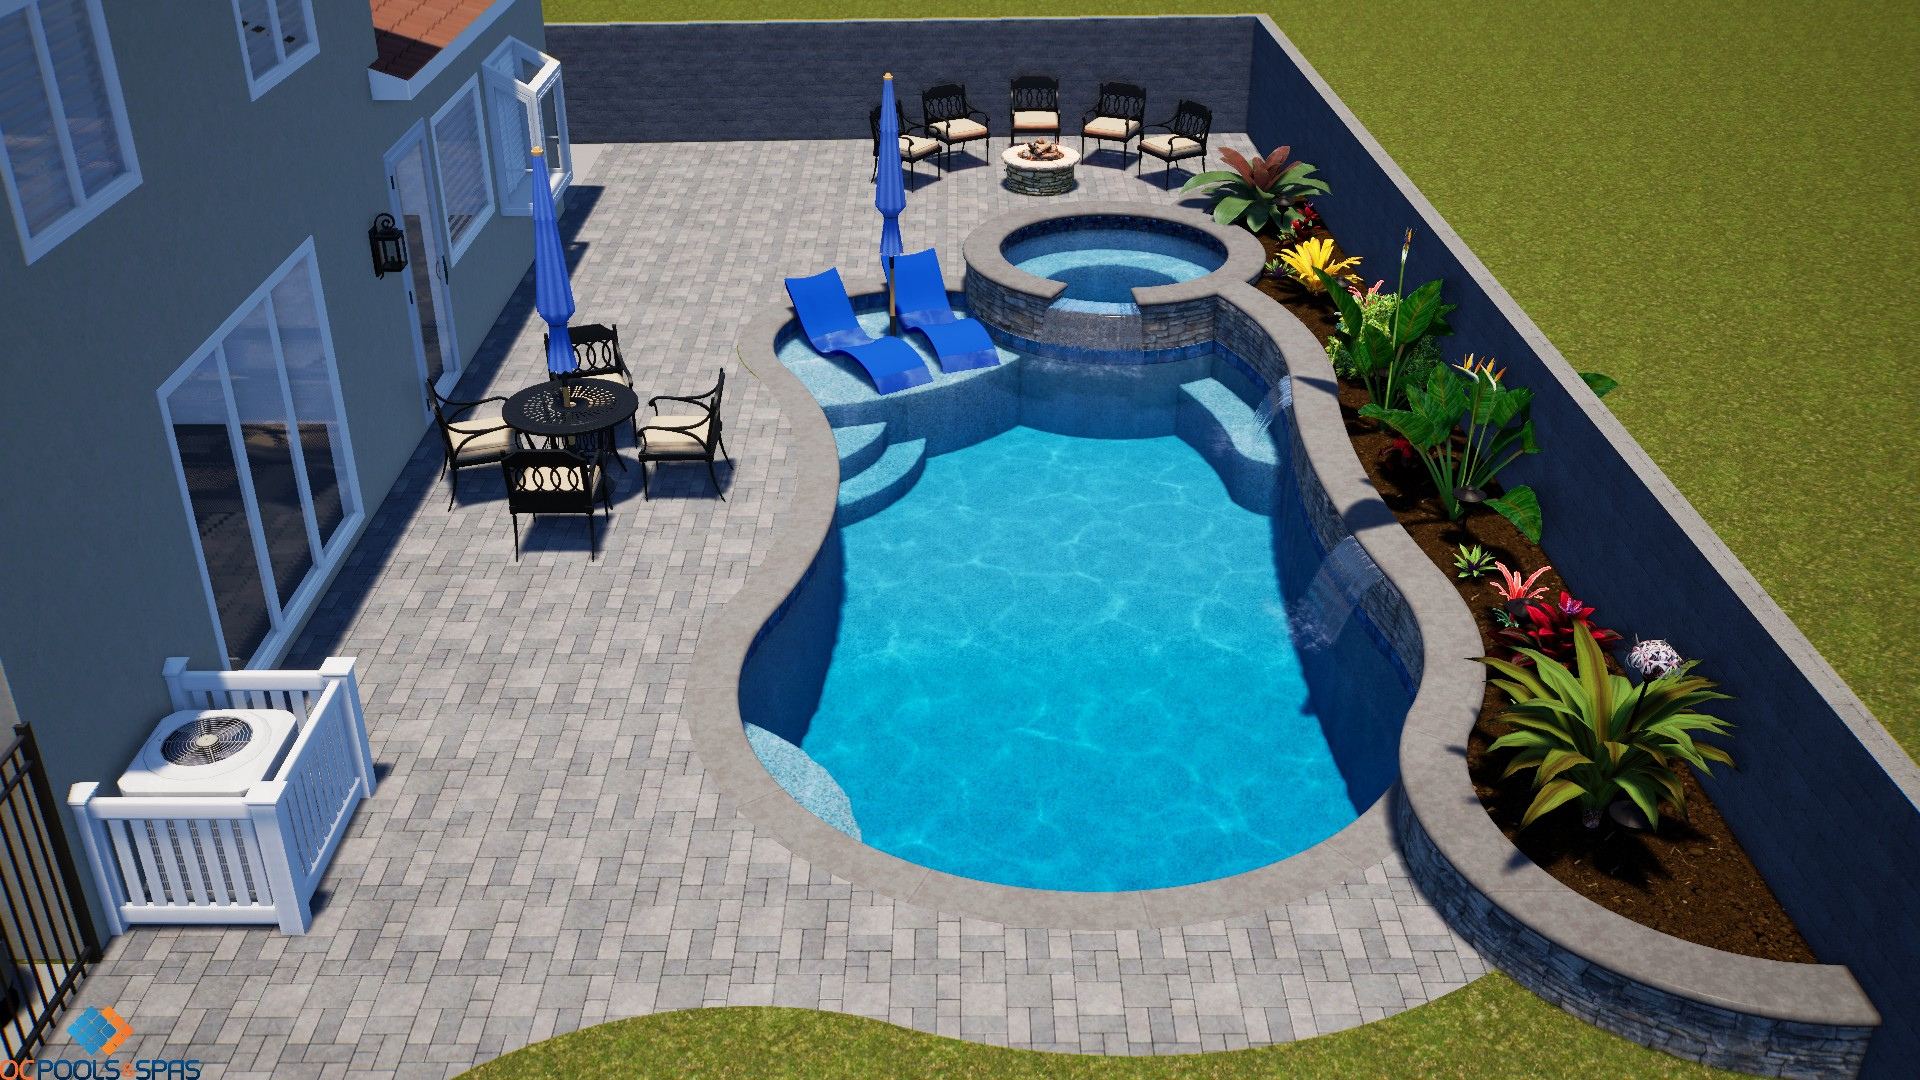 3D Rendering Pool Designs